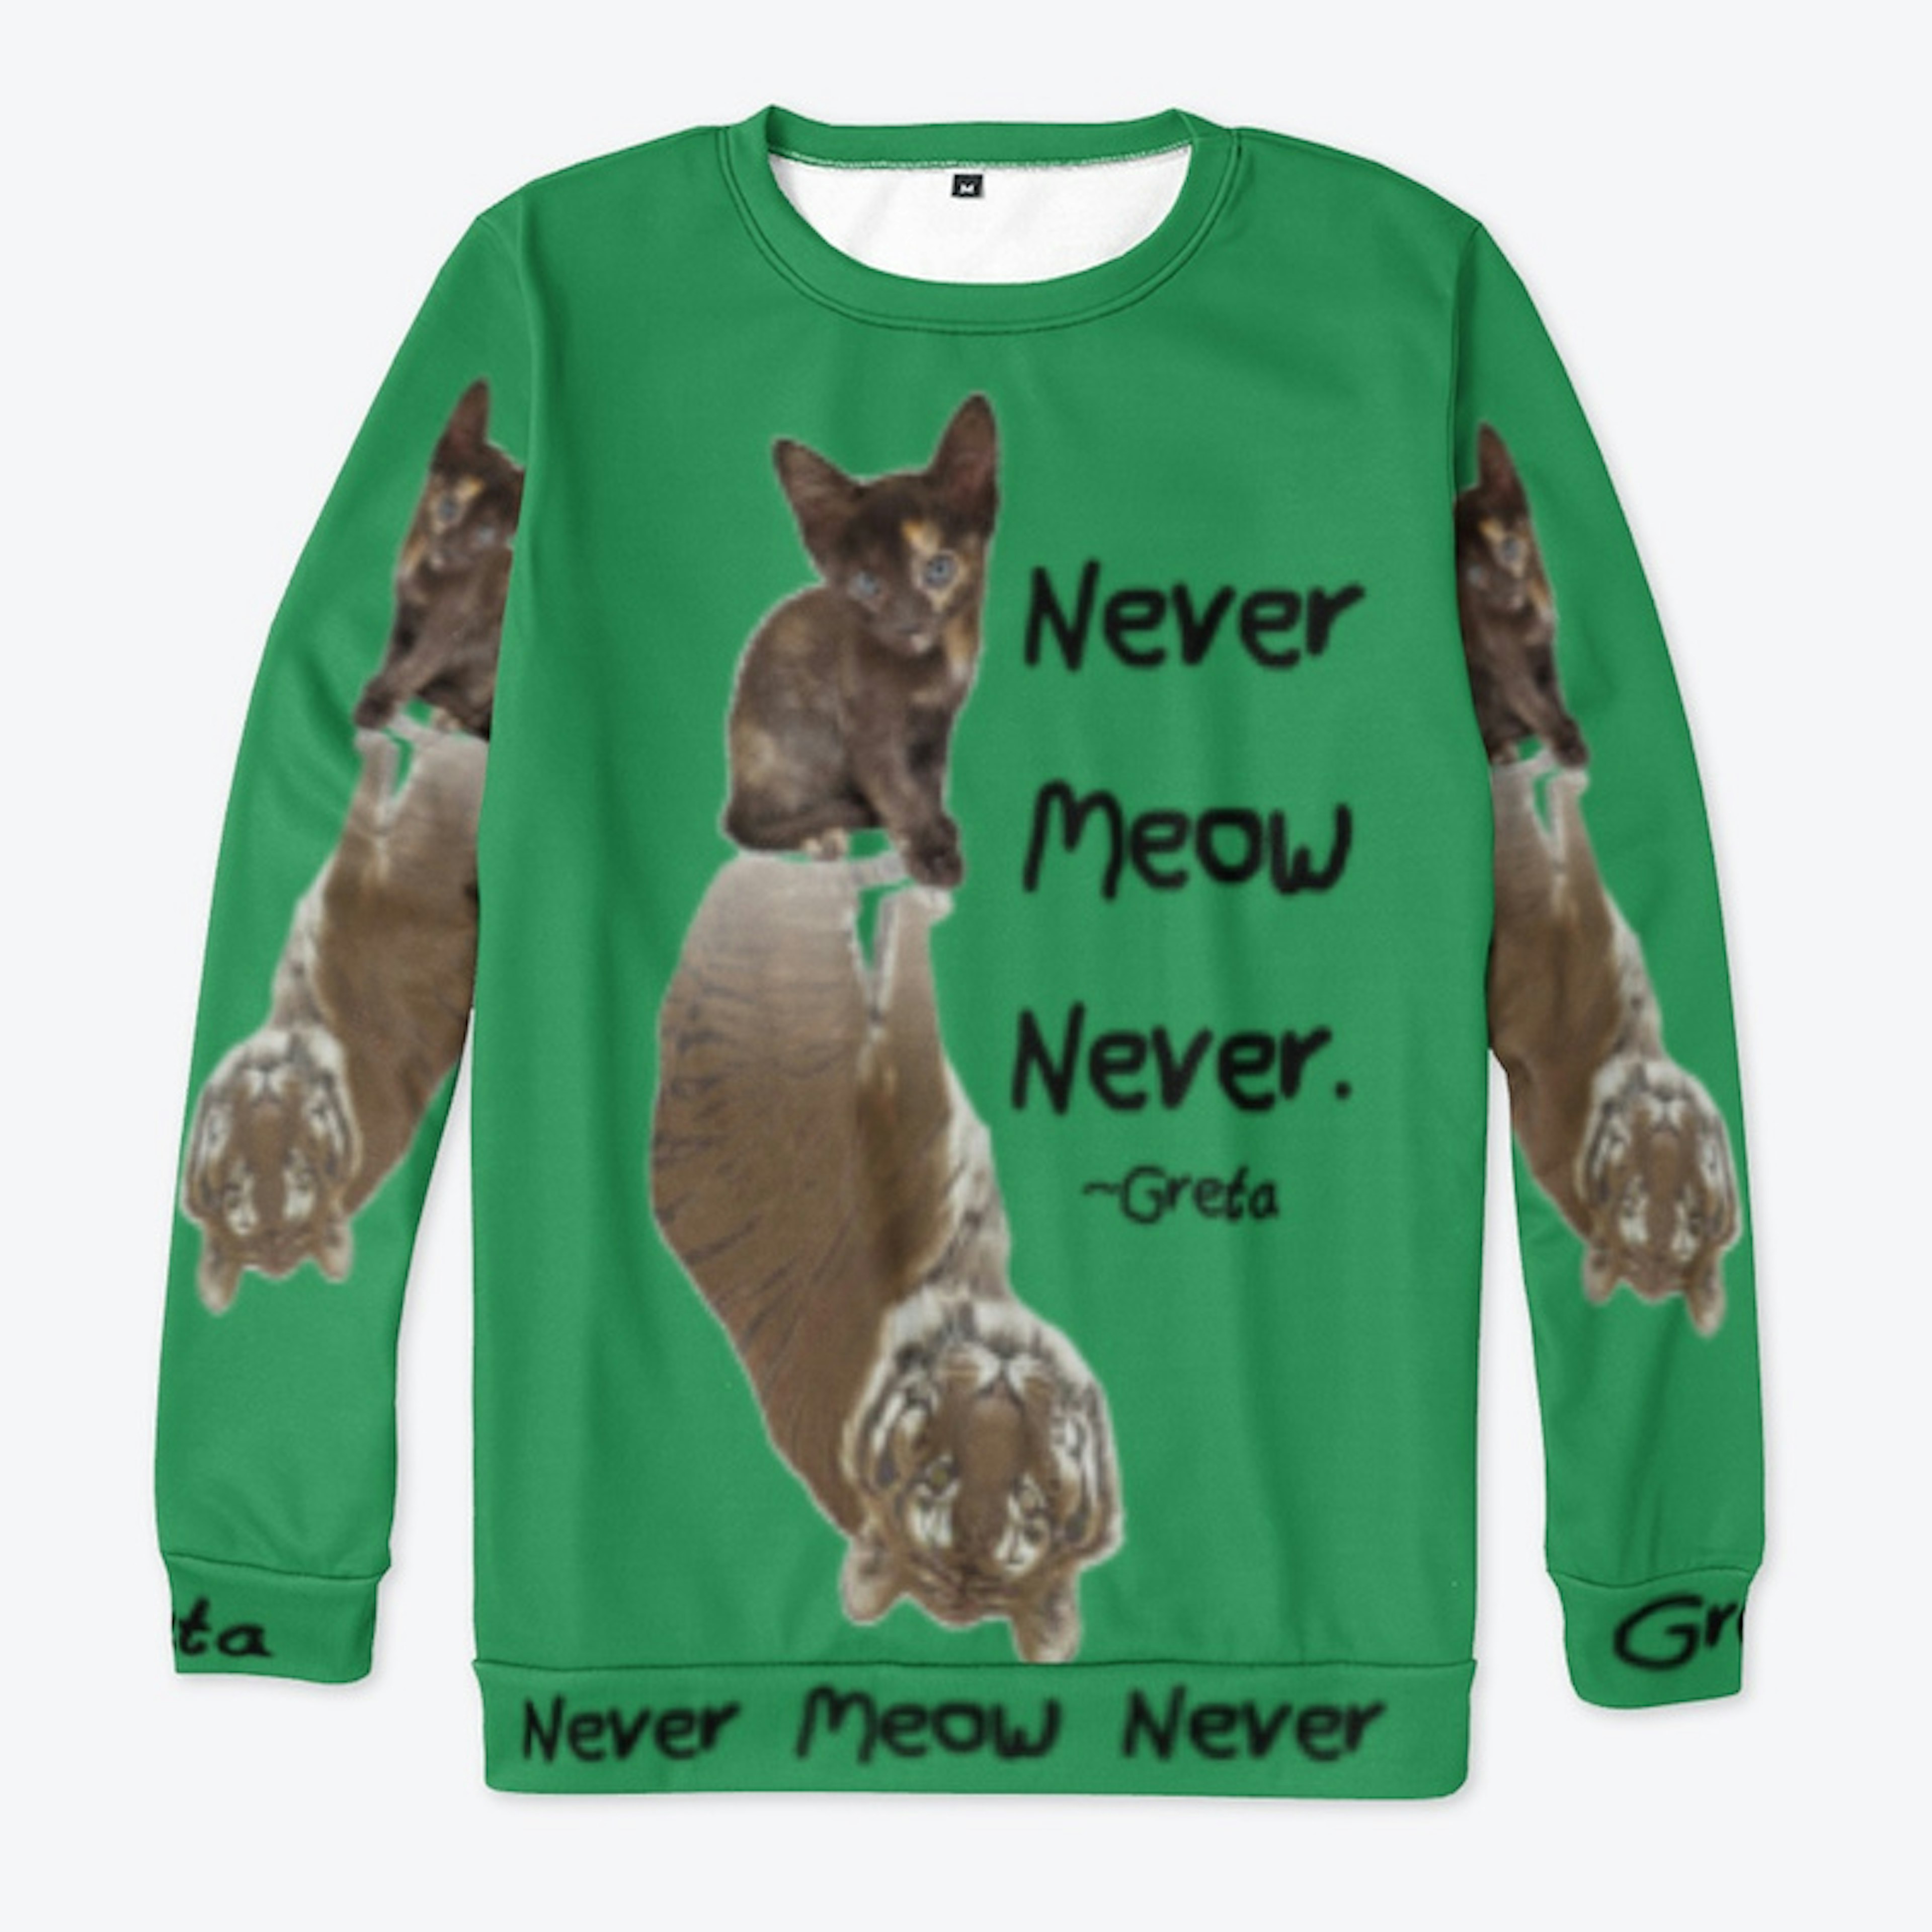 "Never Meow Never" - Greta